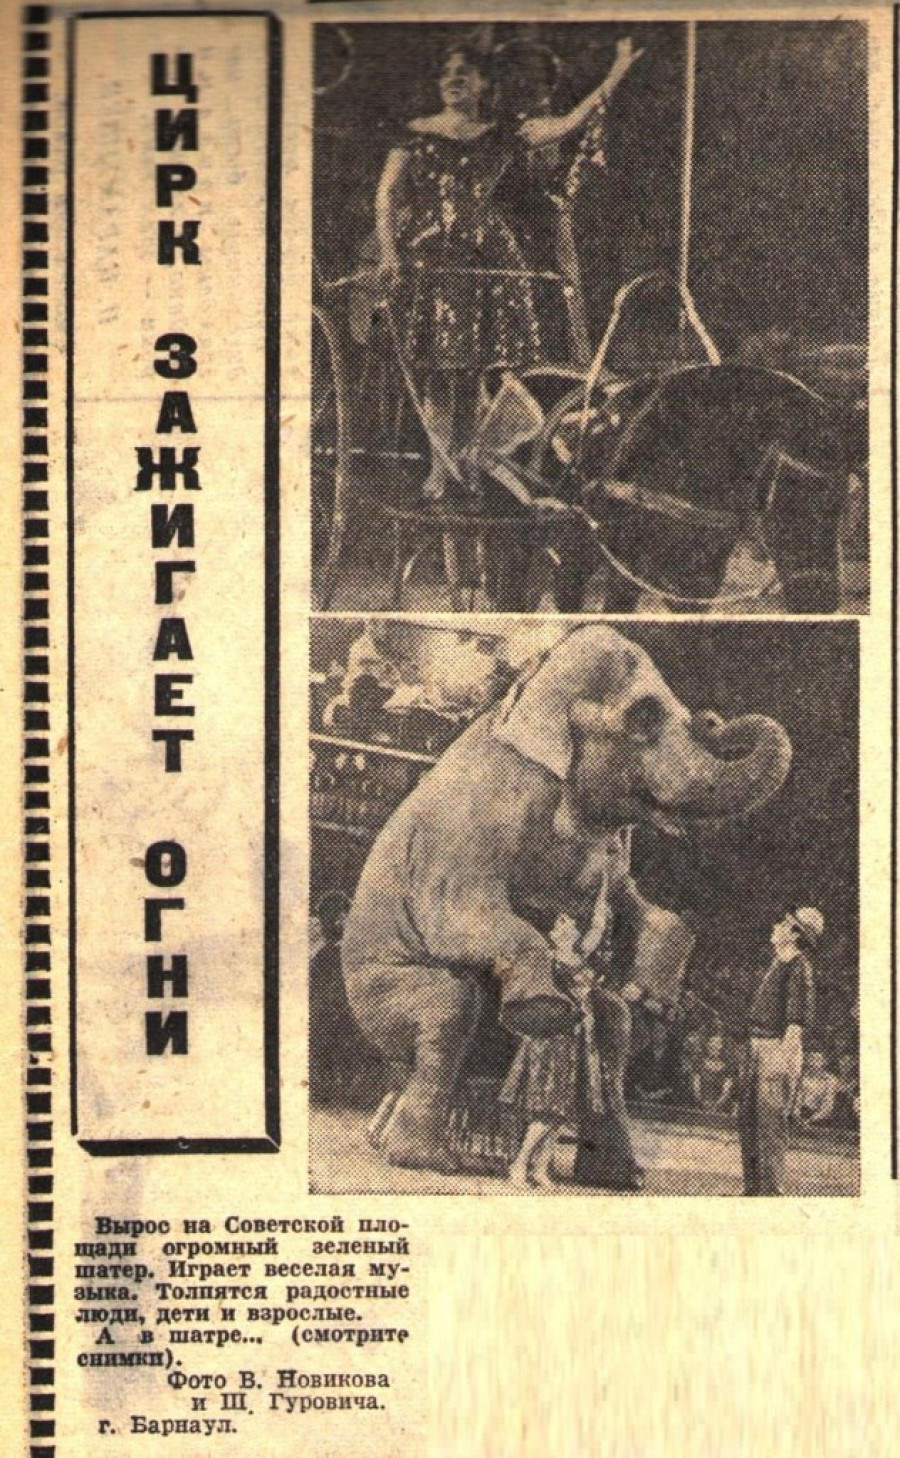 Слониха Катрин, самый крупный слон в стране, фото 1965 года.